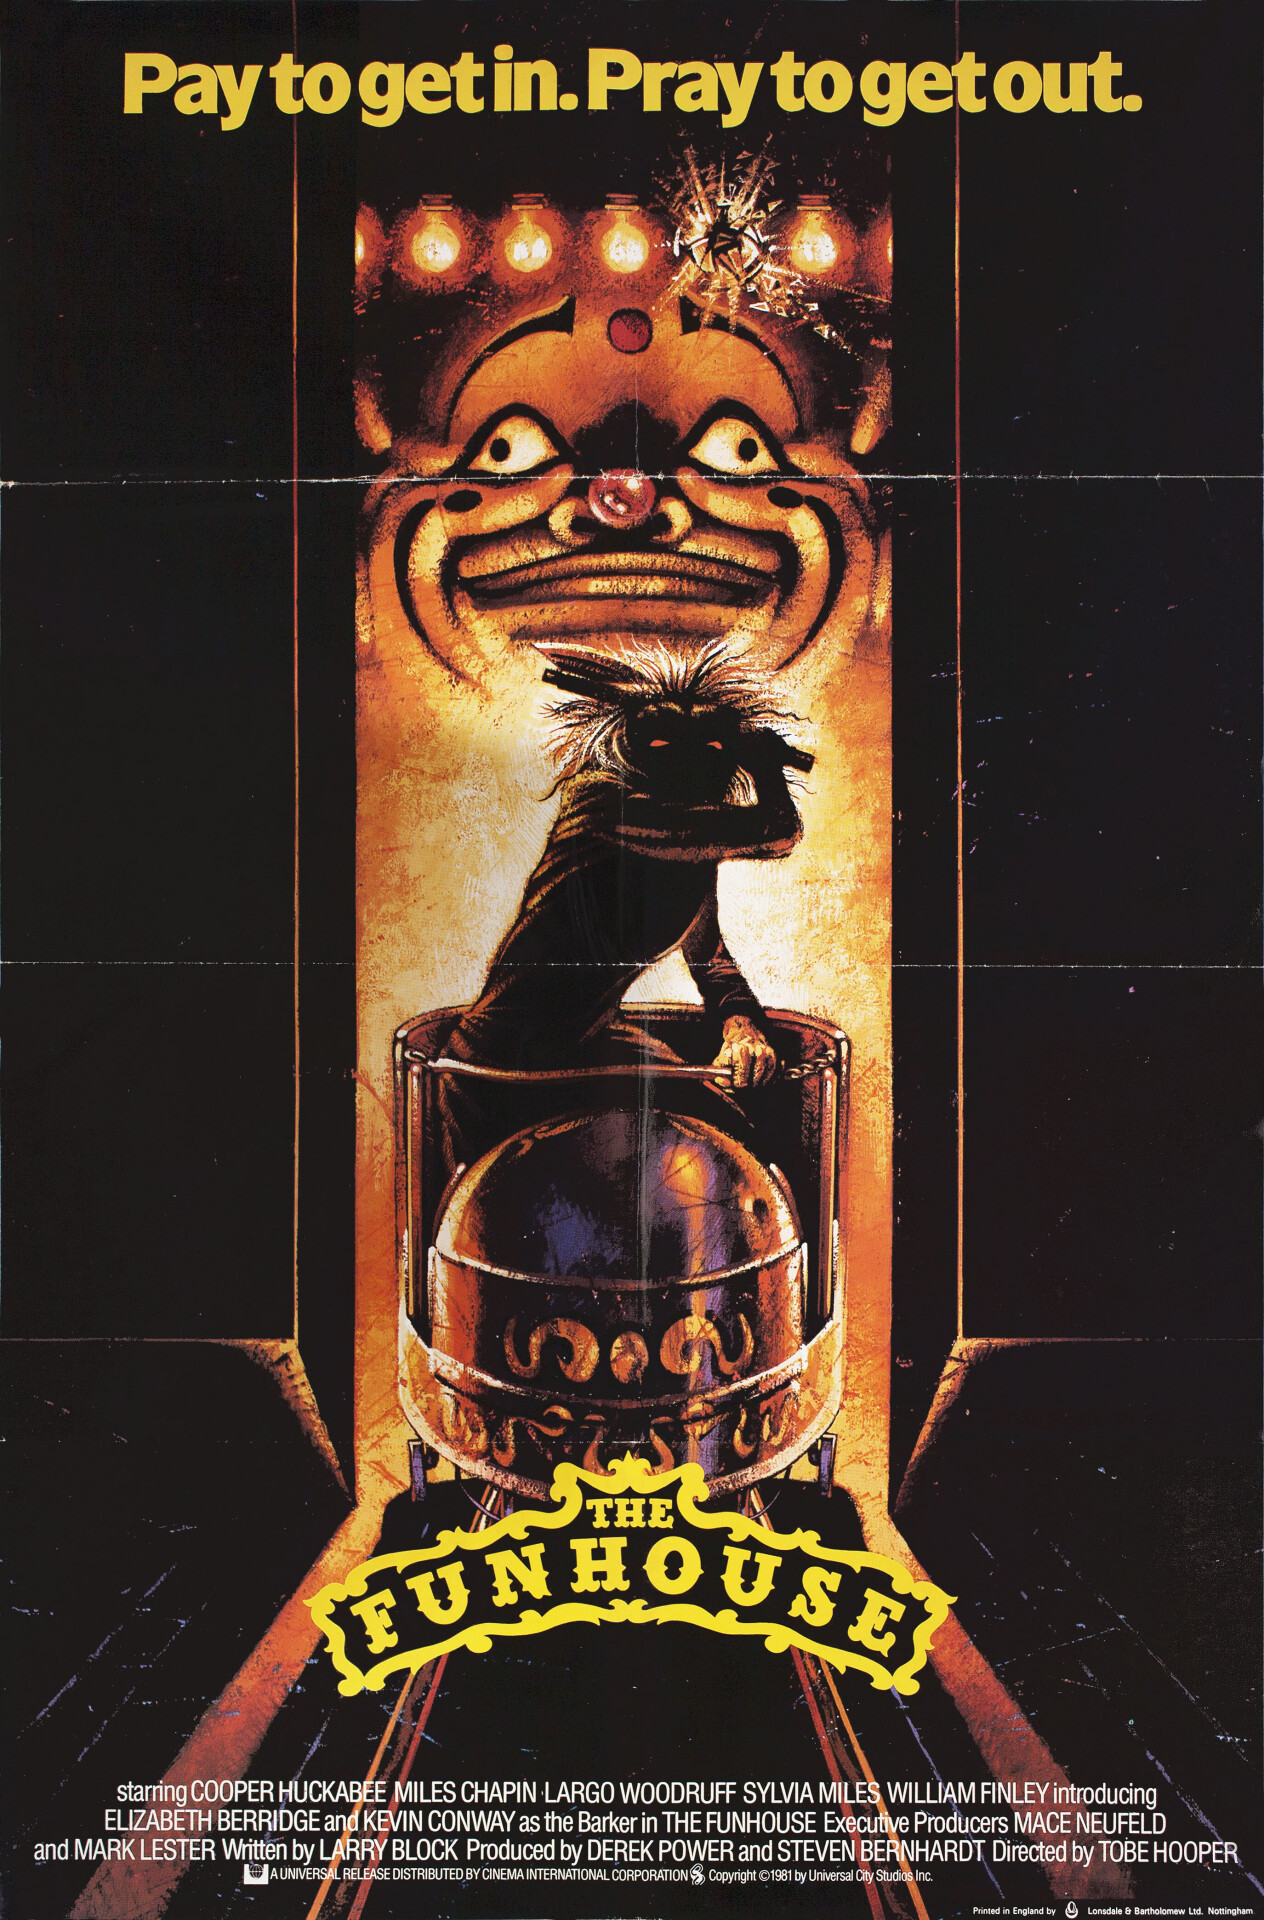 Смертельная забава (The Funhouse, 1981), режиссёр Тобе Хупер, британский постер к фильму (ужасы, 1981 год)